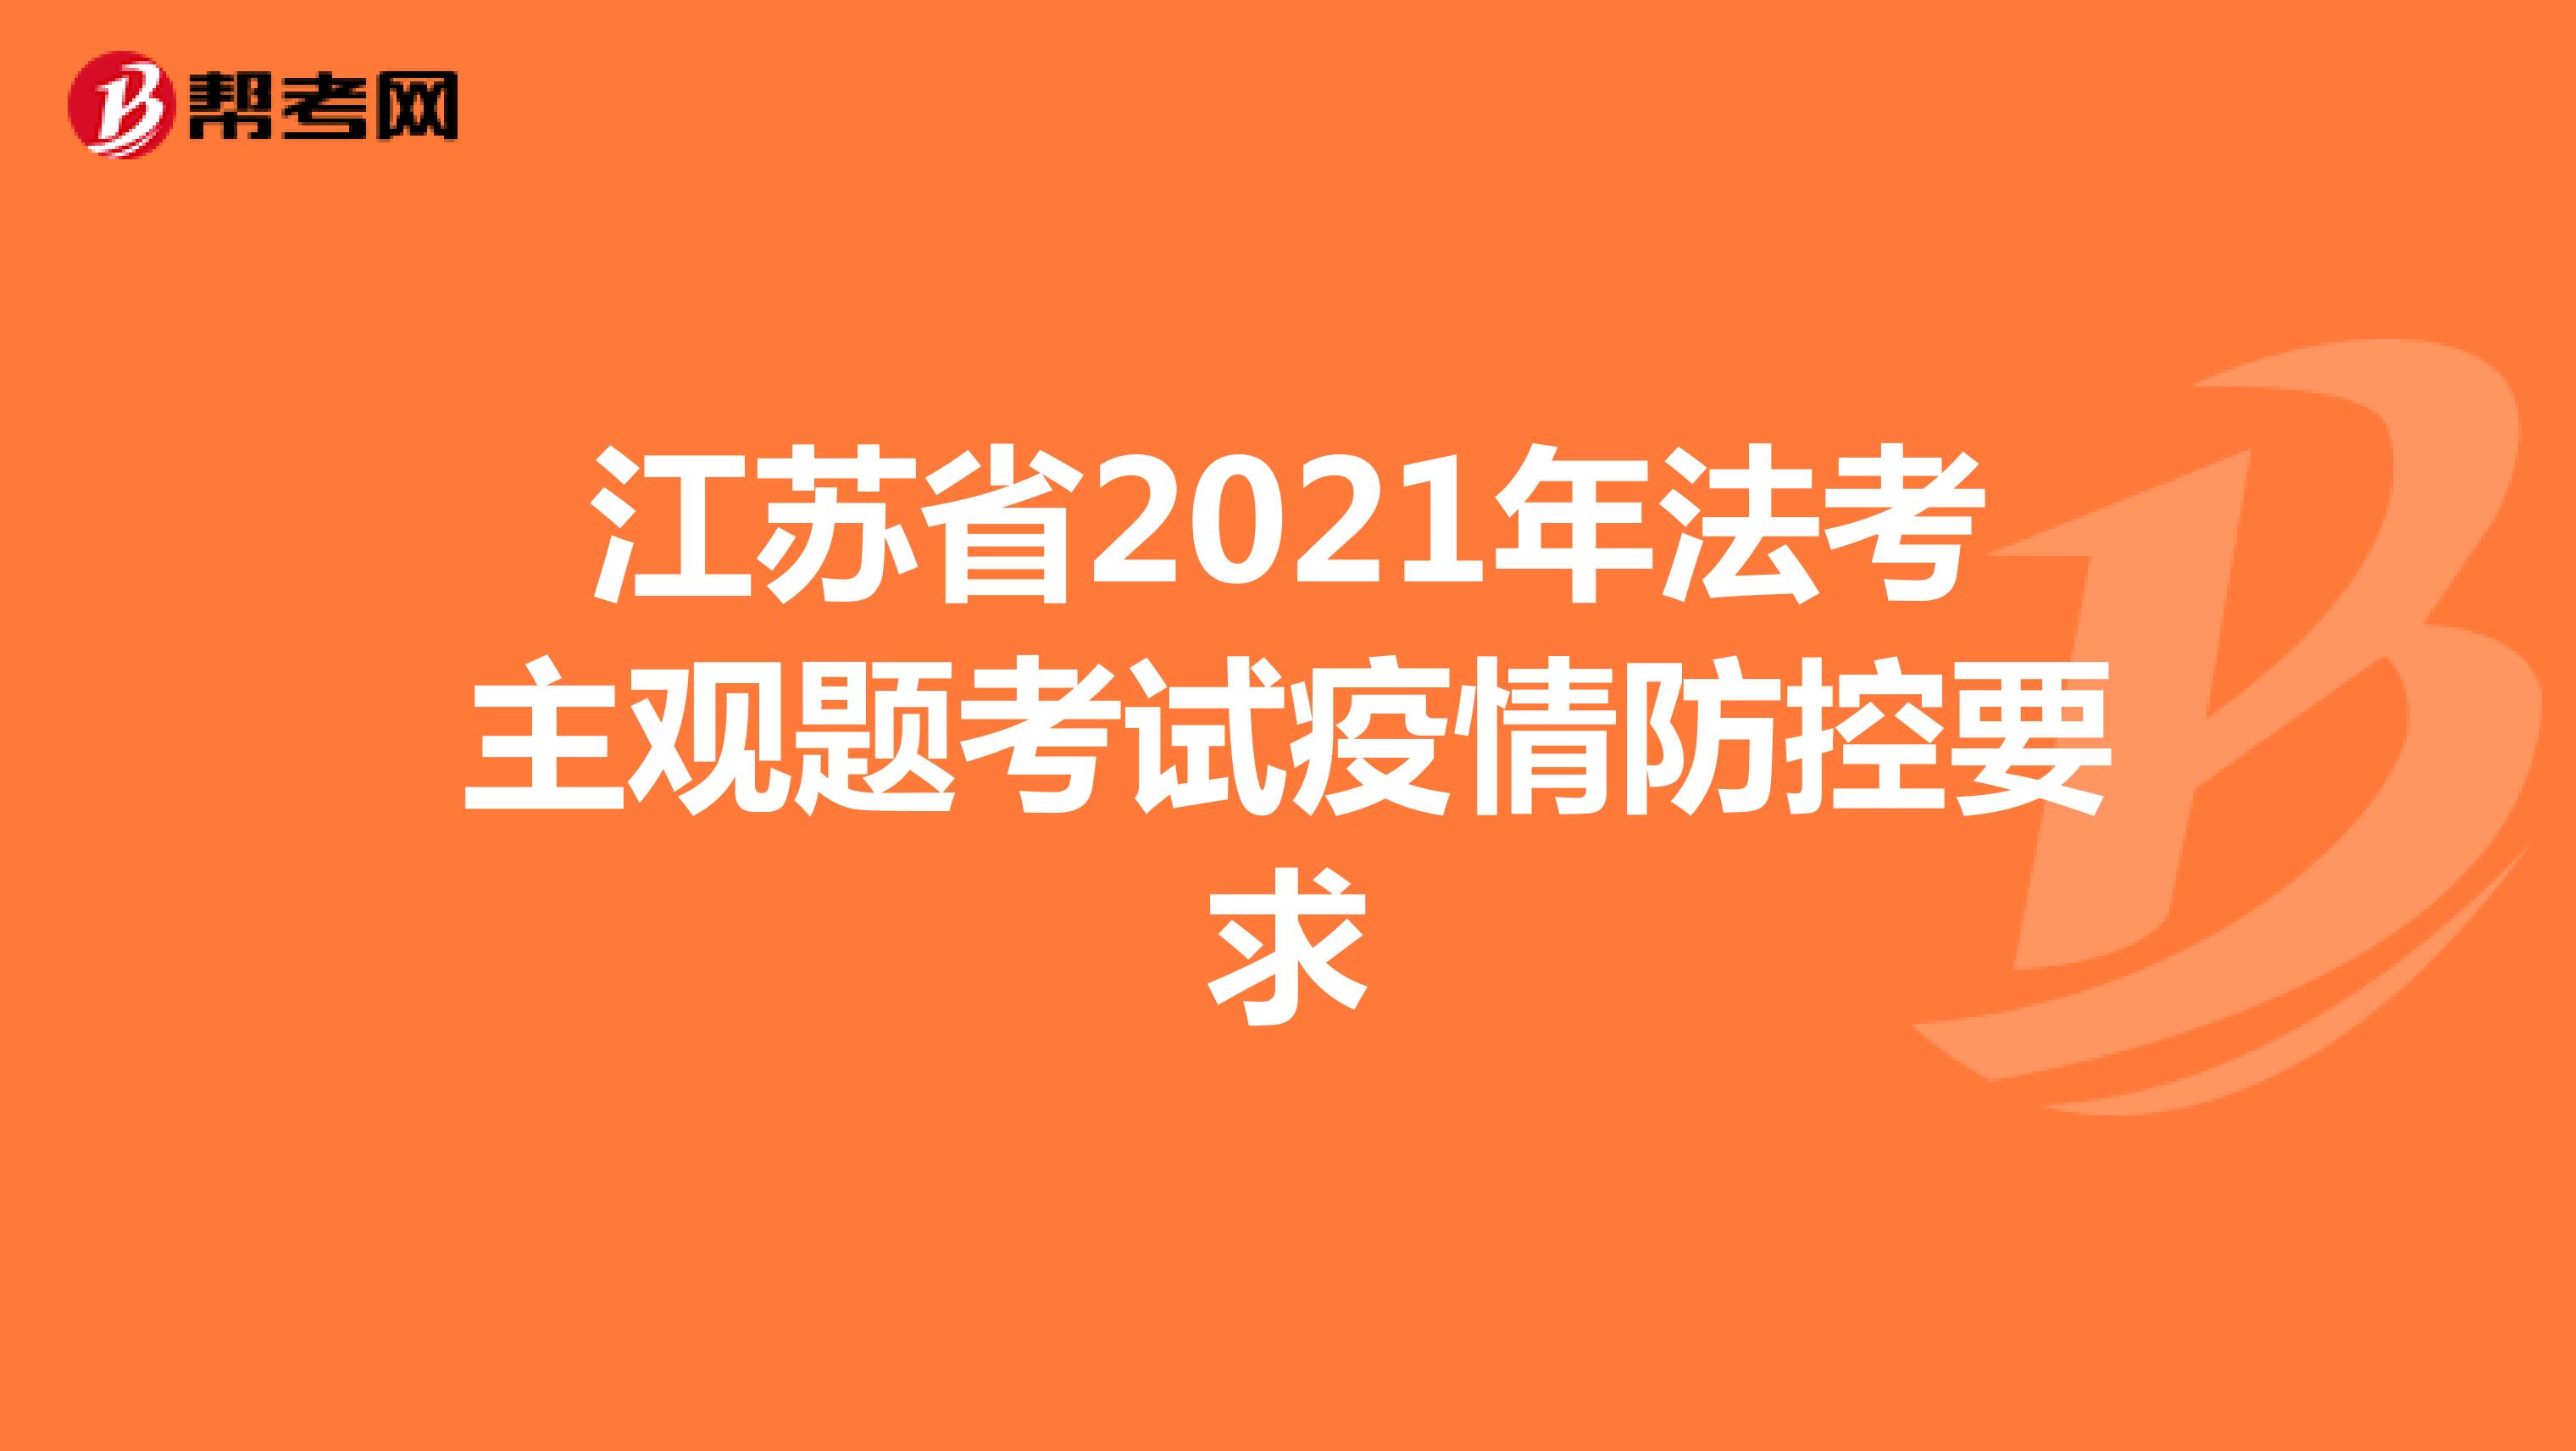 江苏省2021年法考主观题考试疫情防控要求